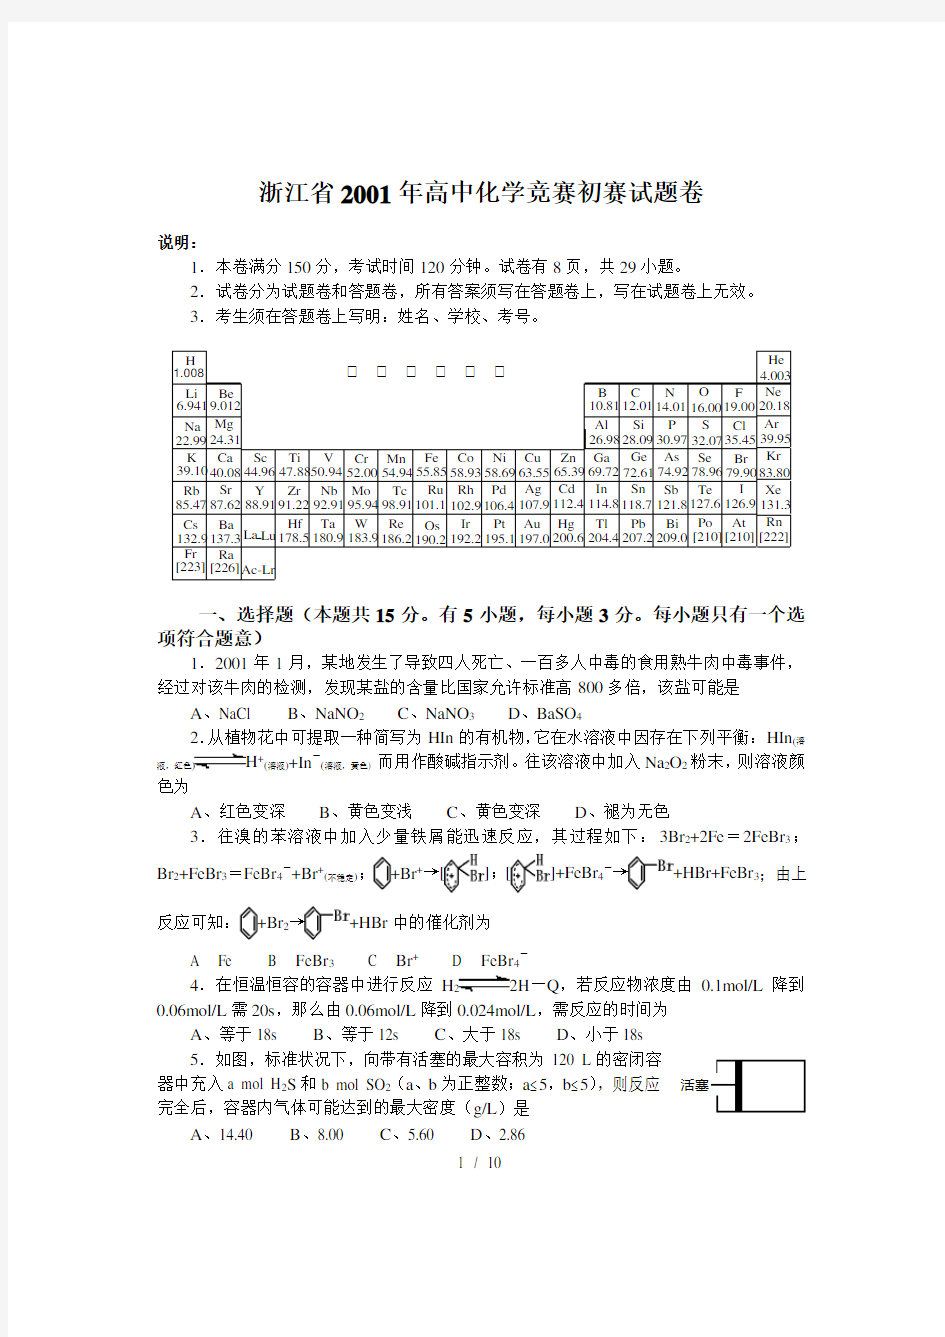 (完整版)浙江省年高中化学竞赛初赛试题卷附答案